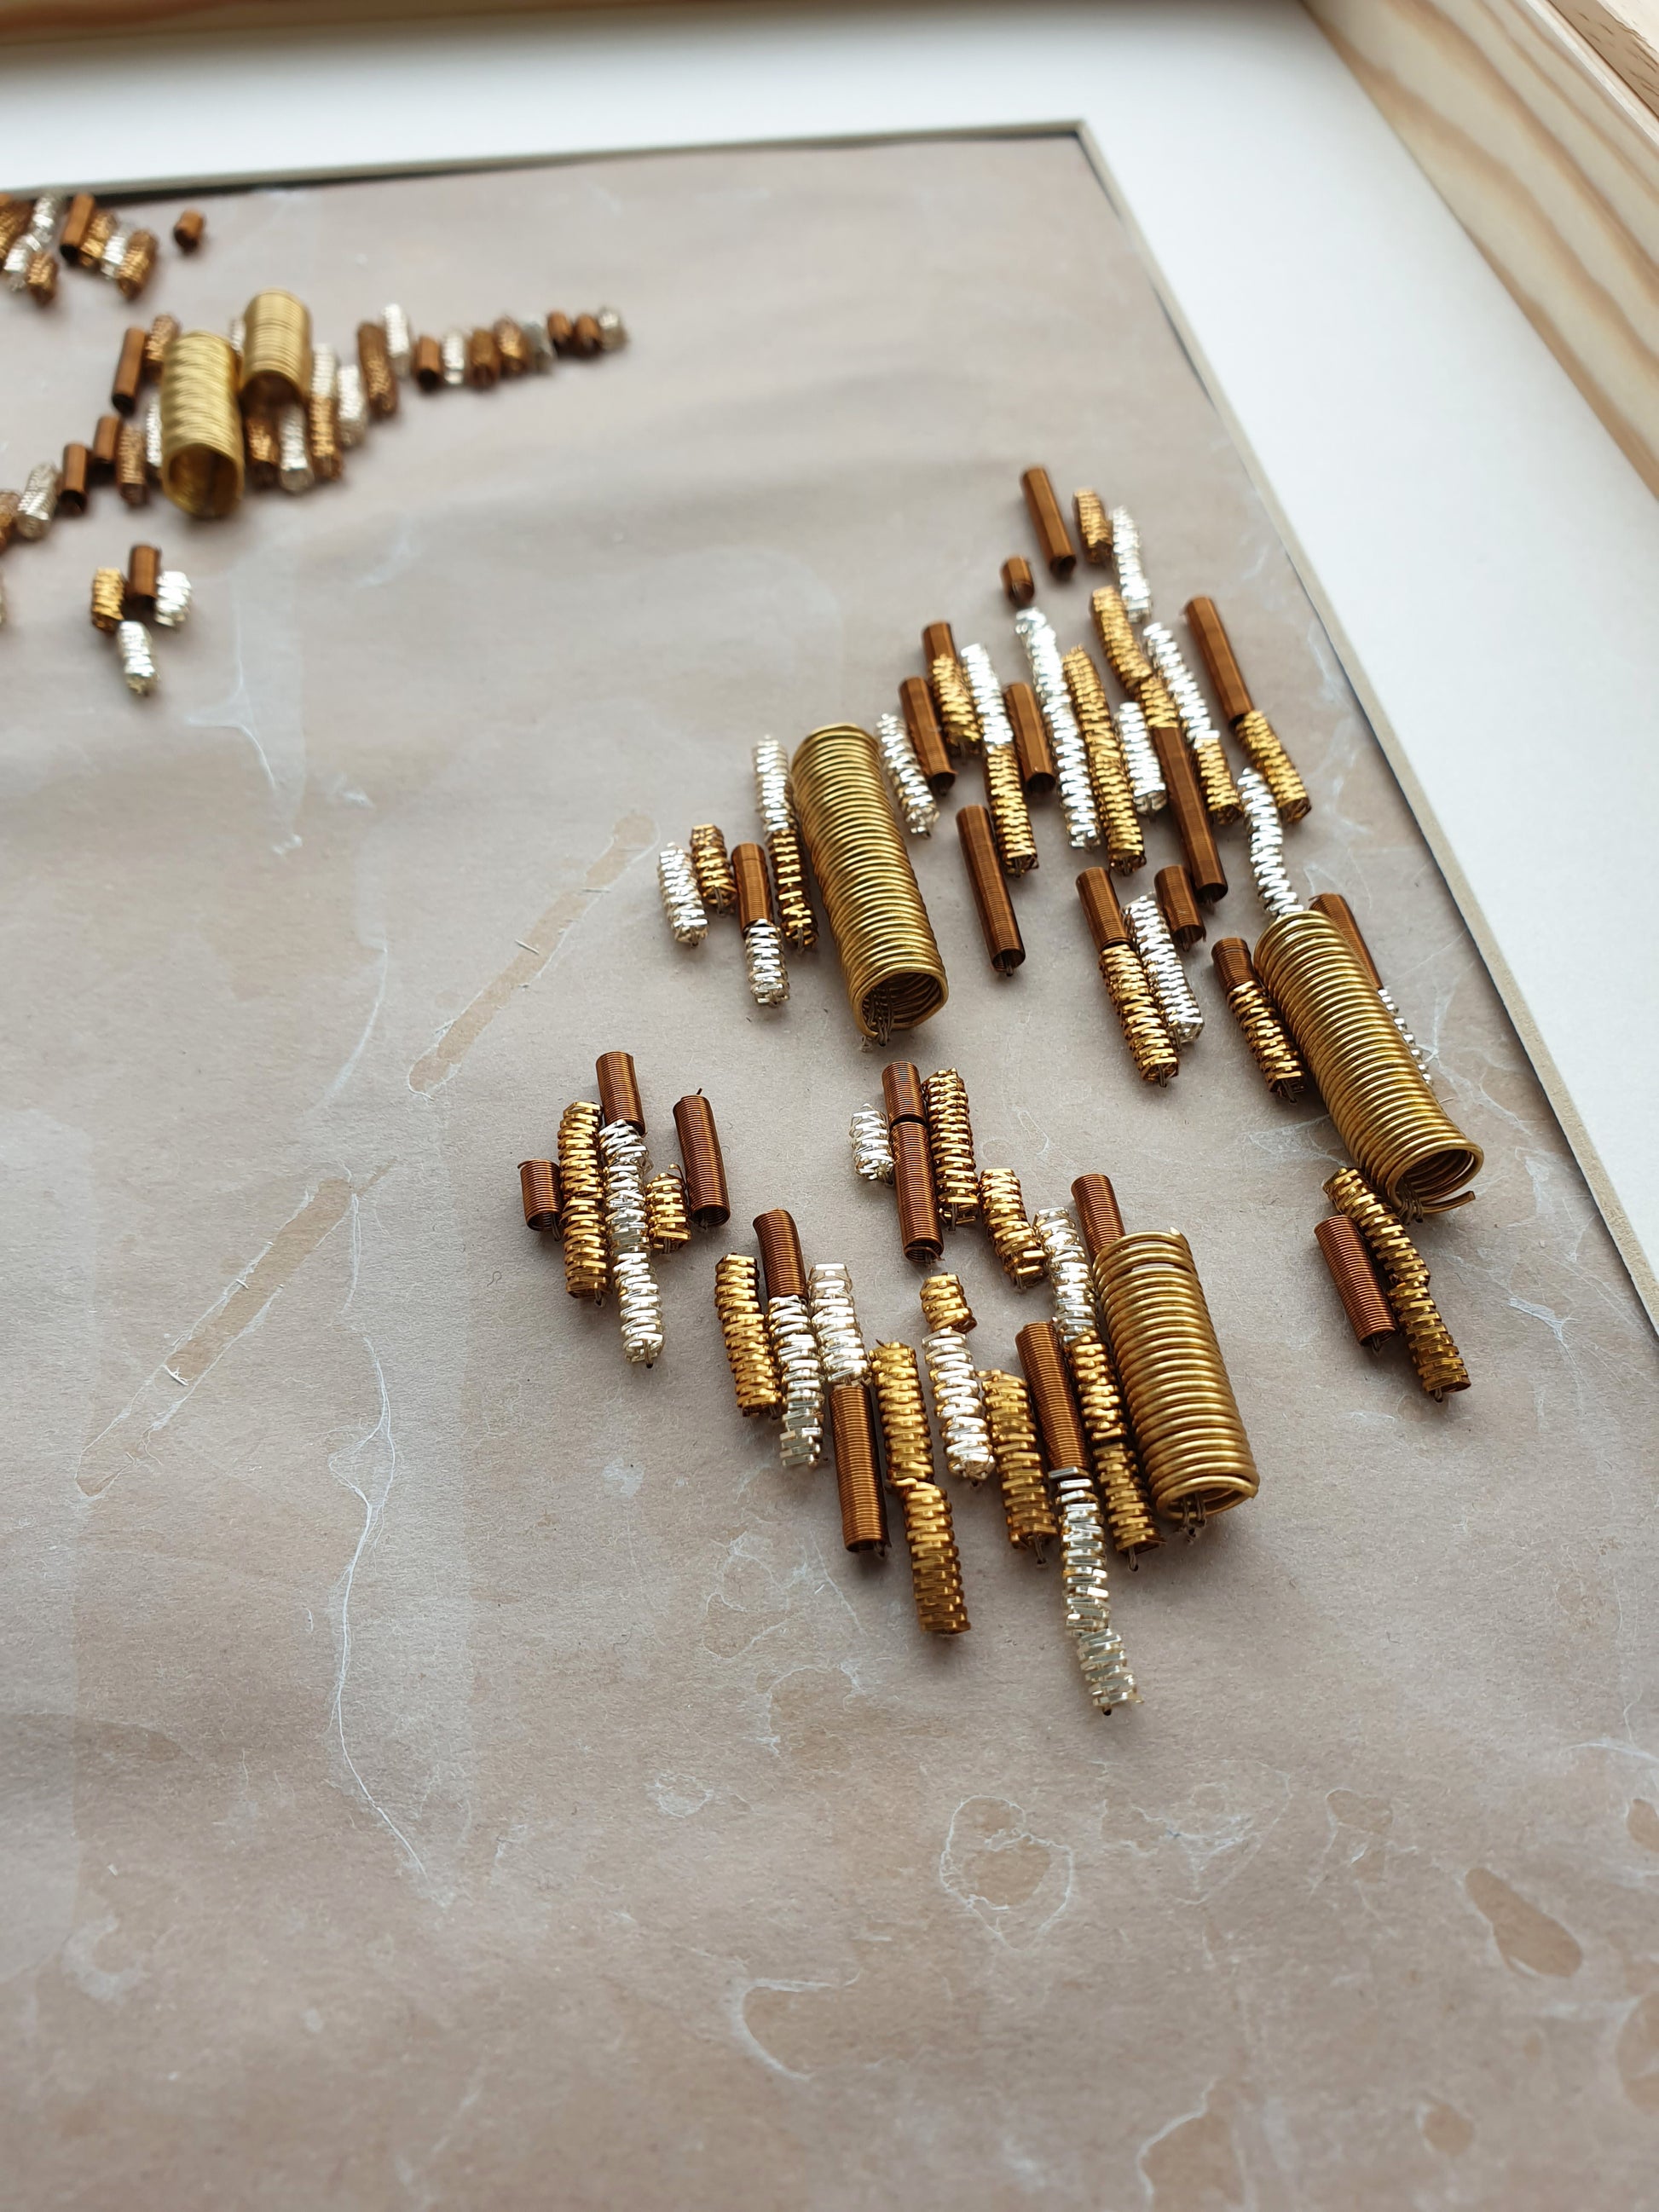 Vue générale de l'oeuvre "A Flanc de Falaises" : Toile légèrement marbré brodée main avec une multitude de fournitures métalliques (cannetilles doré, argenté, cuivré)